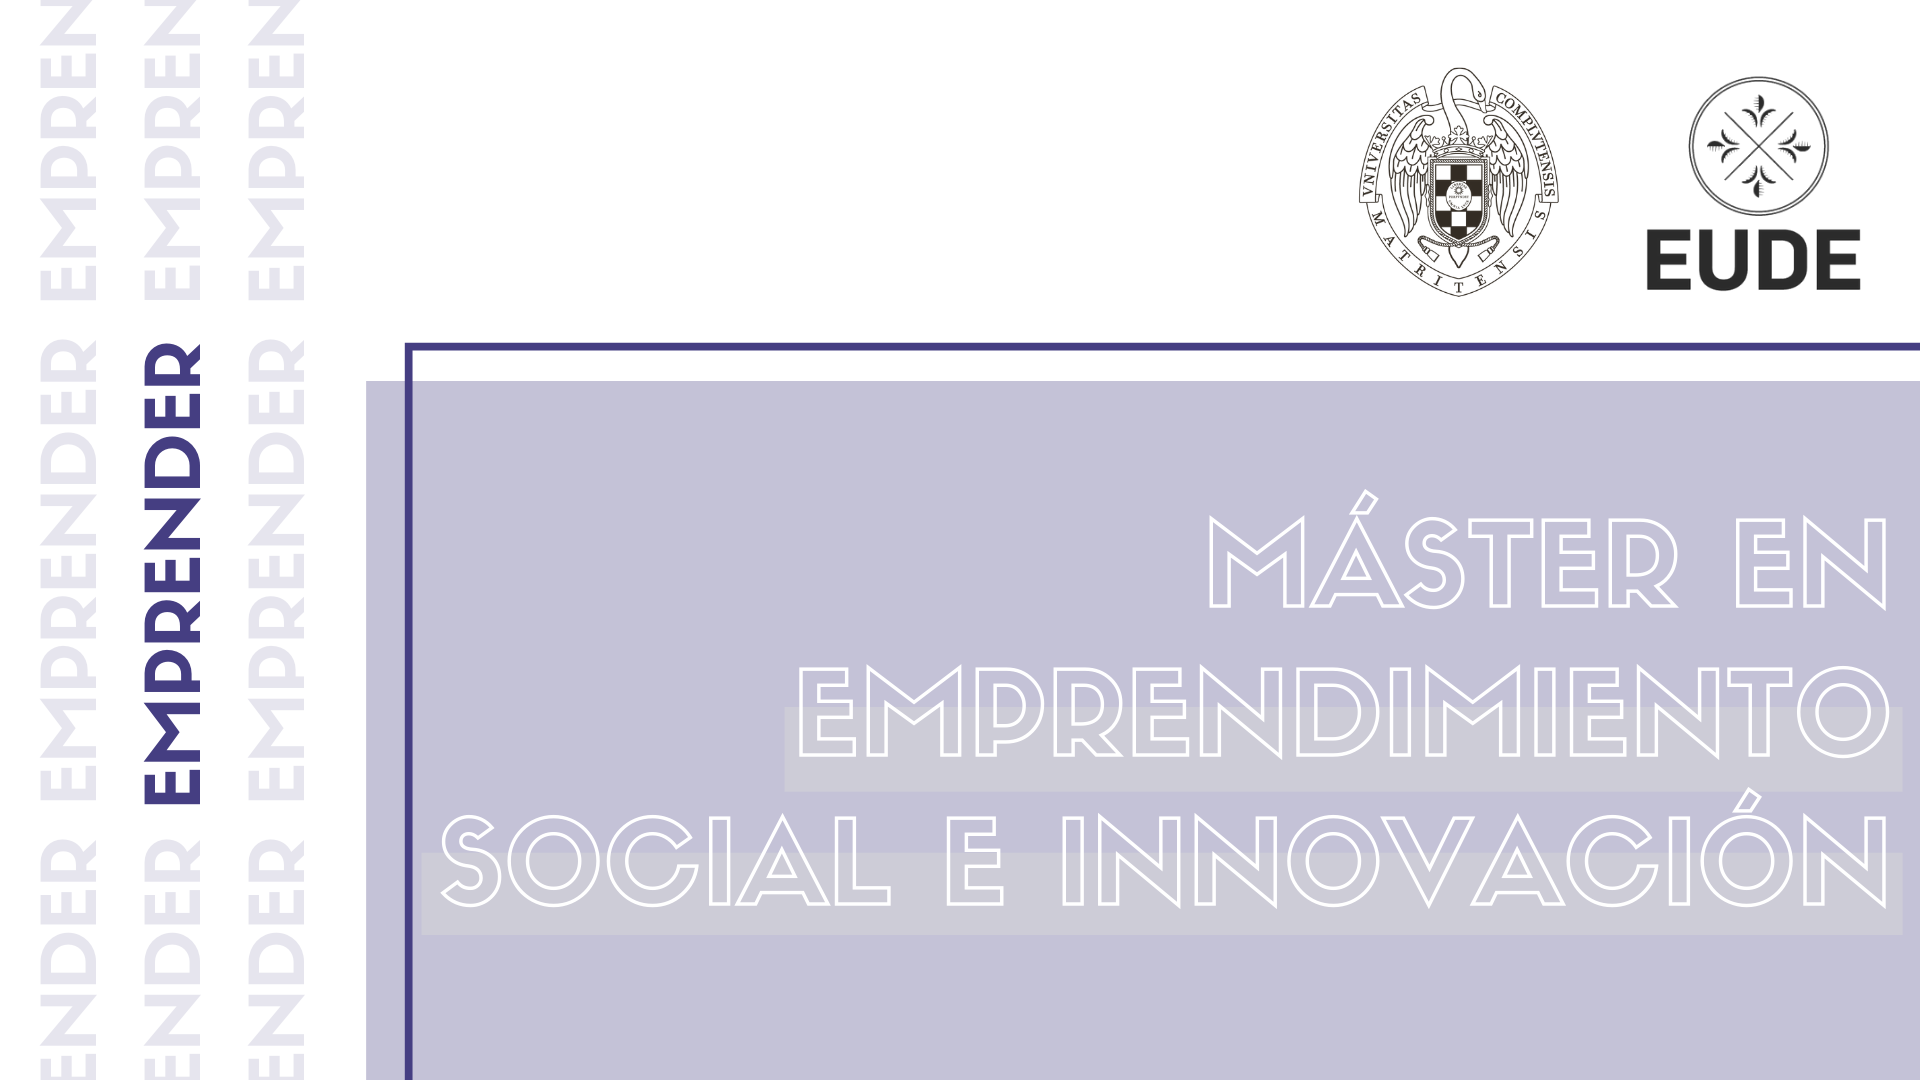 Matrícula abierta para el Master en Emprendimiento Social e Innovación UCM-EUDE